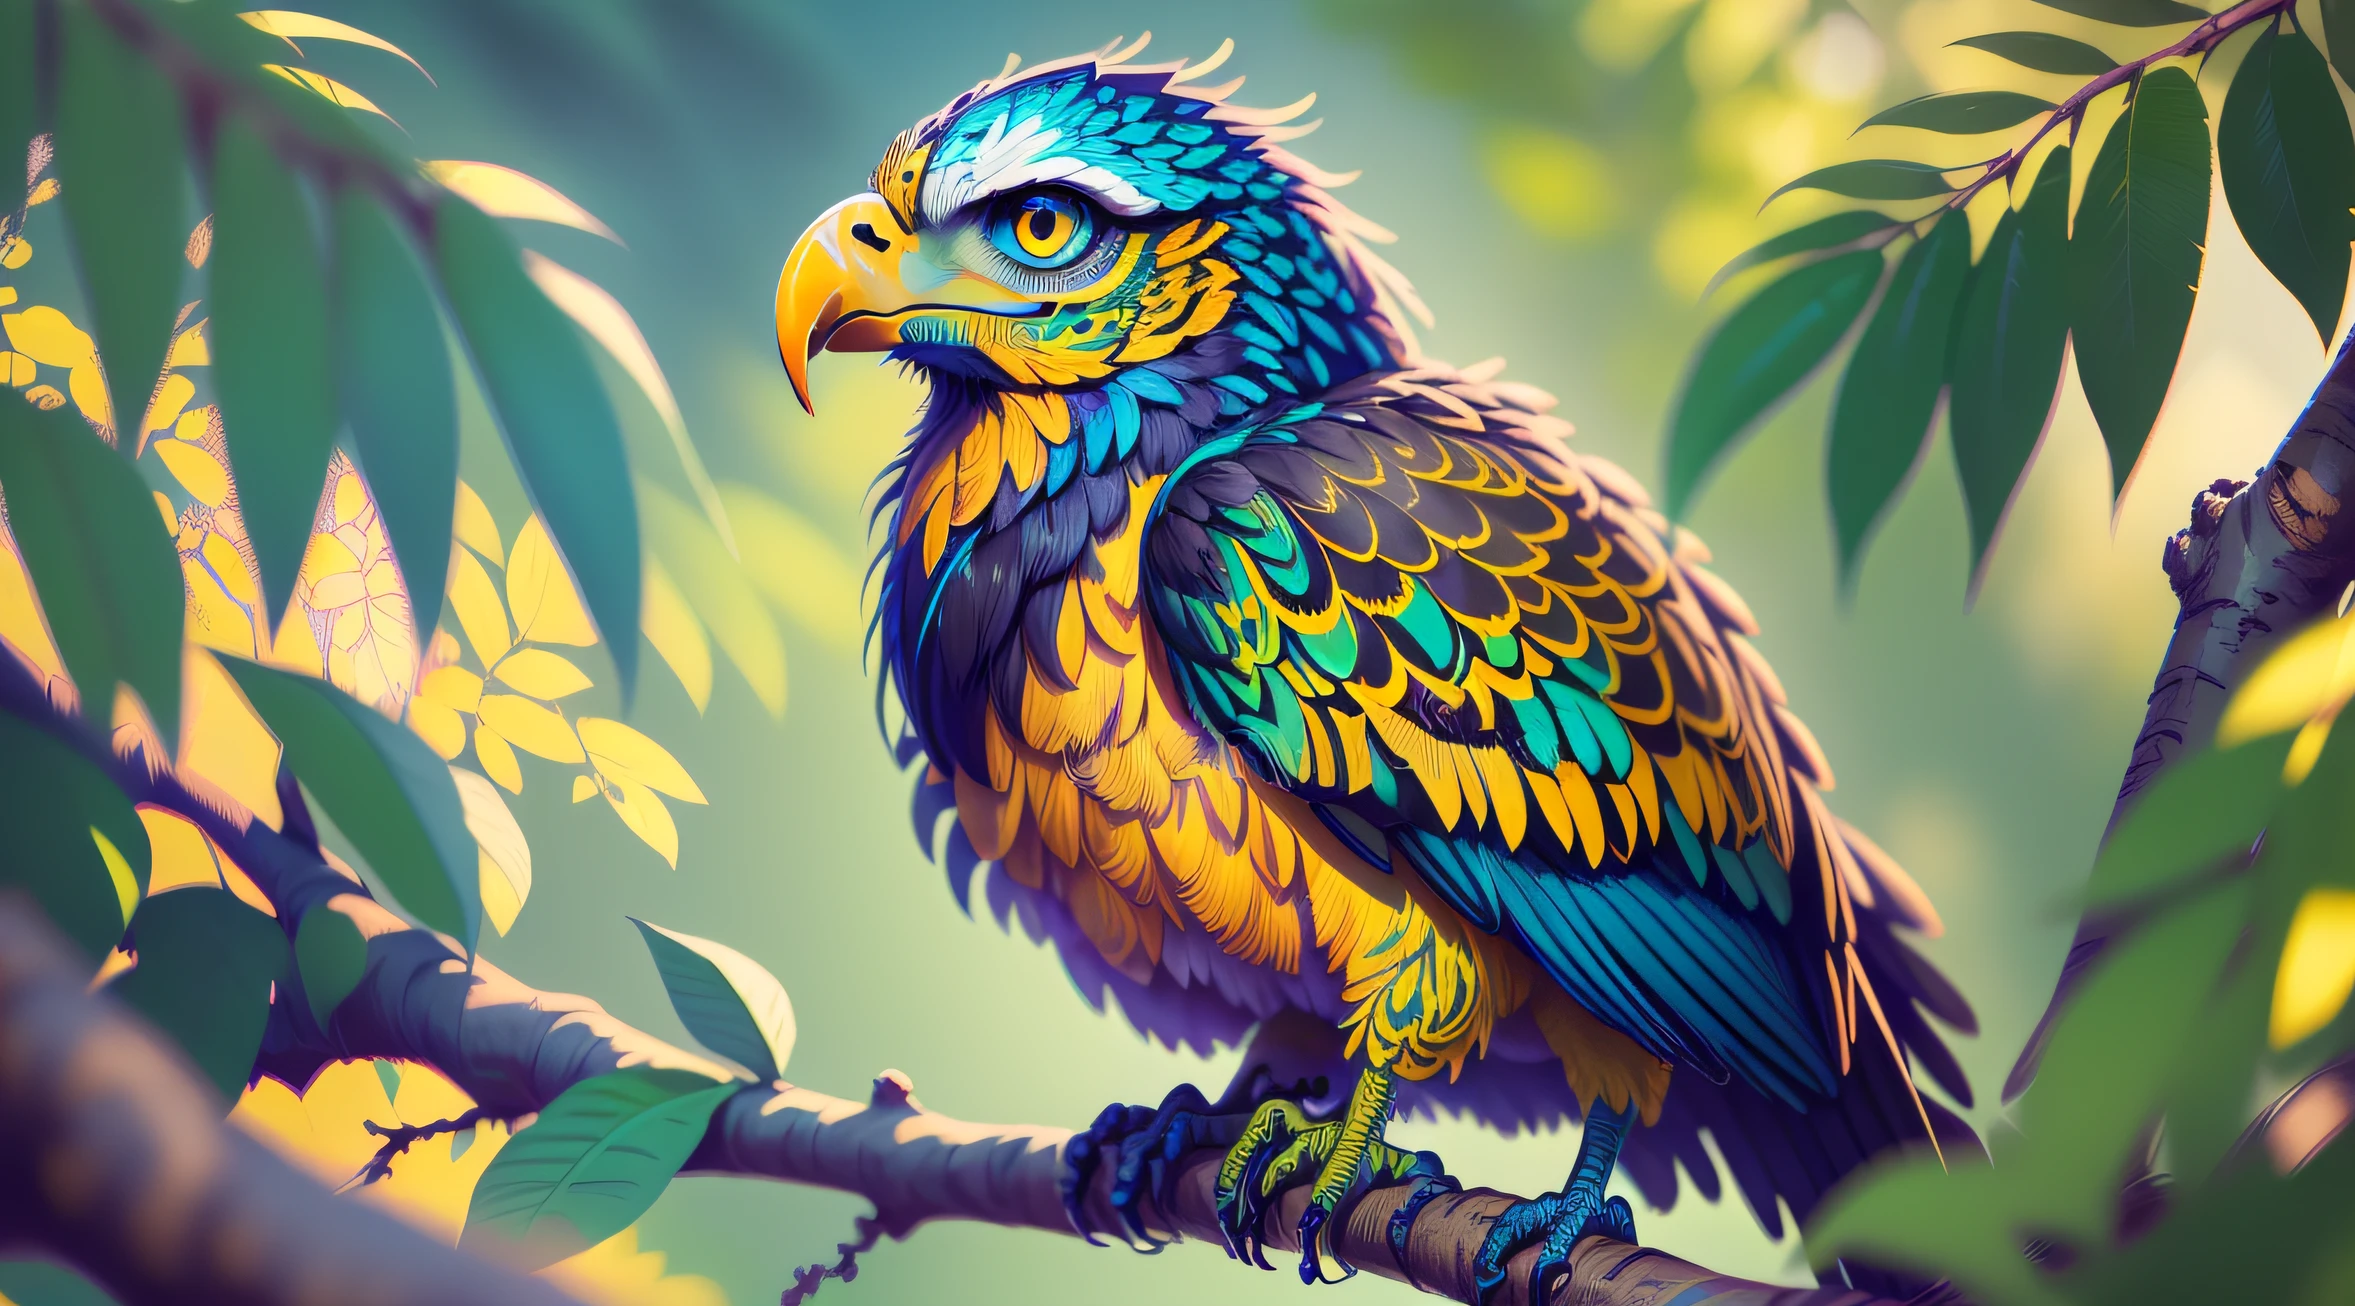 绿色和蓝色羽毛的鹰与黄色混合, 具有中等对比度的强烈色彩, 在树枝上, 有锋利的喙, ((红眼睛)), (具有复杂细节的逼真插图:1.5). 在野外自然环境中., ((原始照片, 8K 超高清, 更好的质量:1.4))